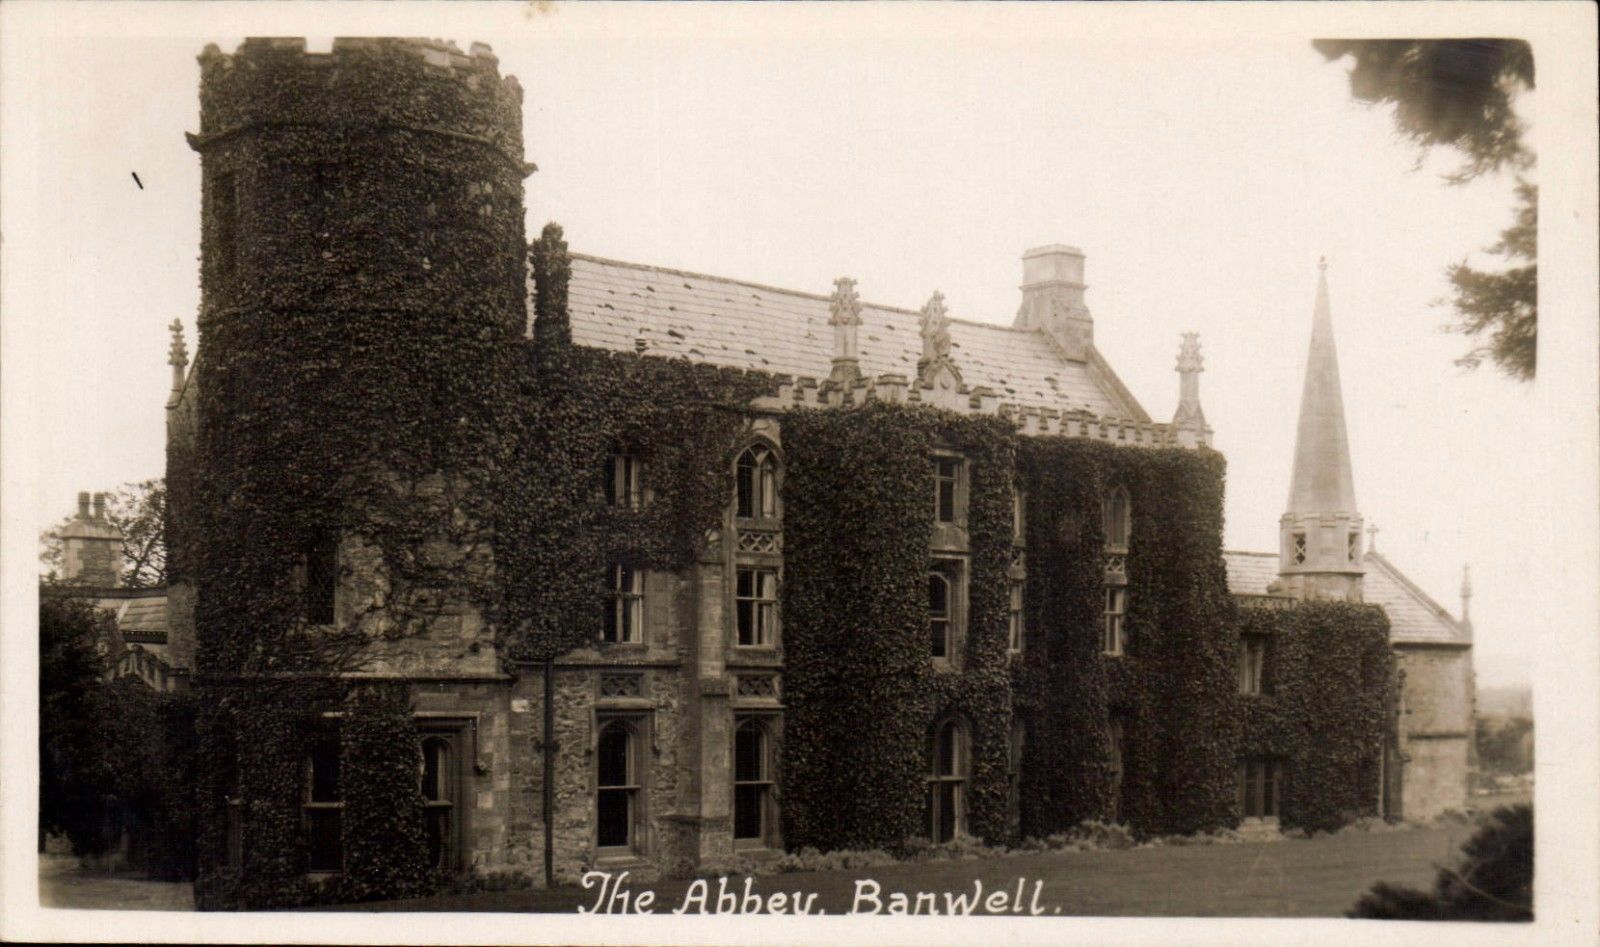 Banwell Abbey